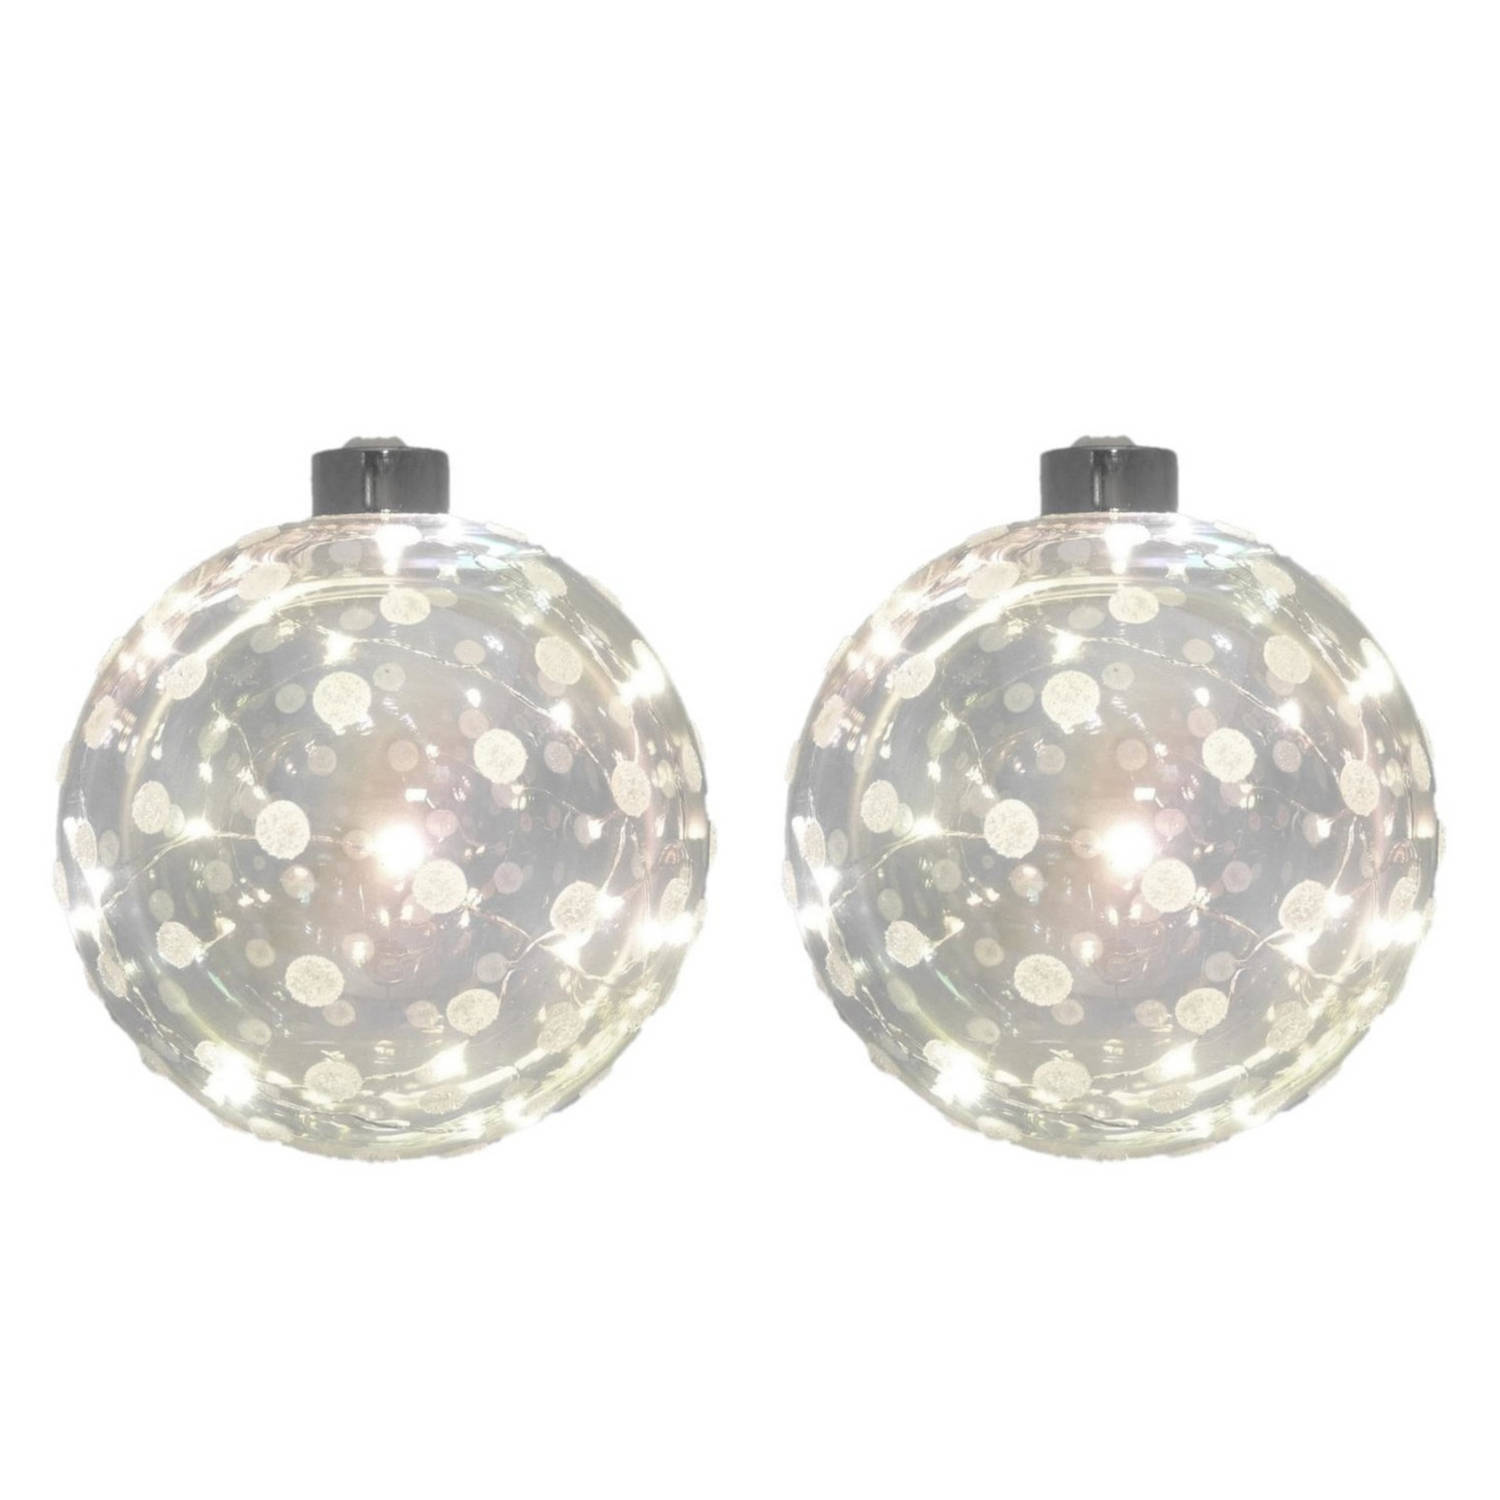 2x Glazen Decoratie Kerstballen Met 20 Led Lampjes Verlichting 12 Cm Kerstversiering-kerstdecoratie